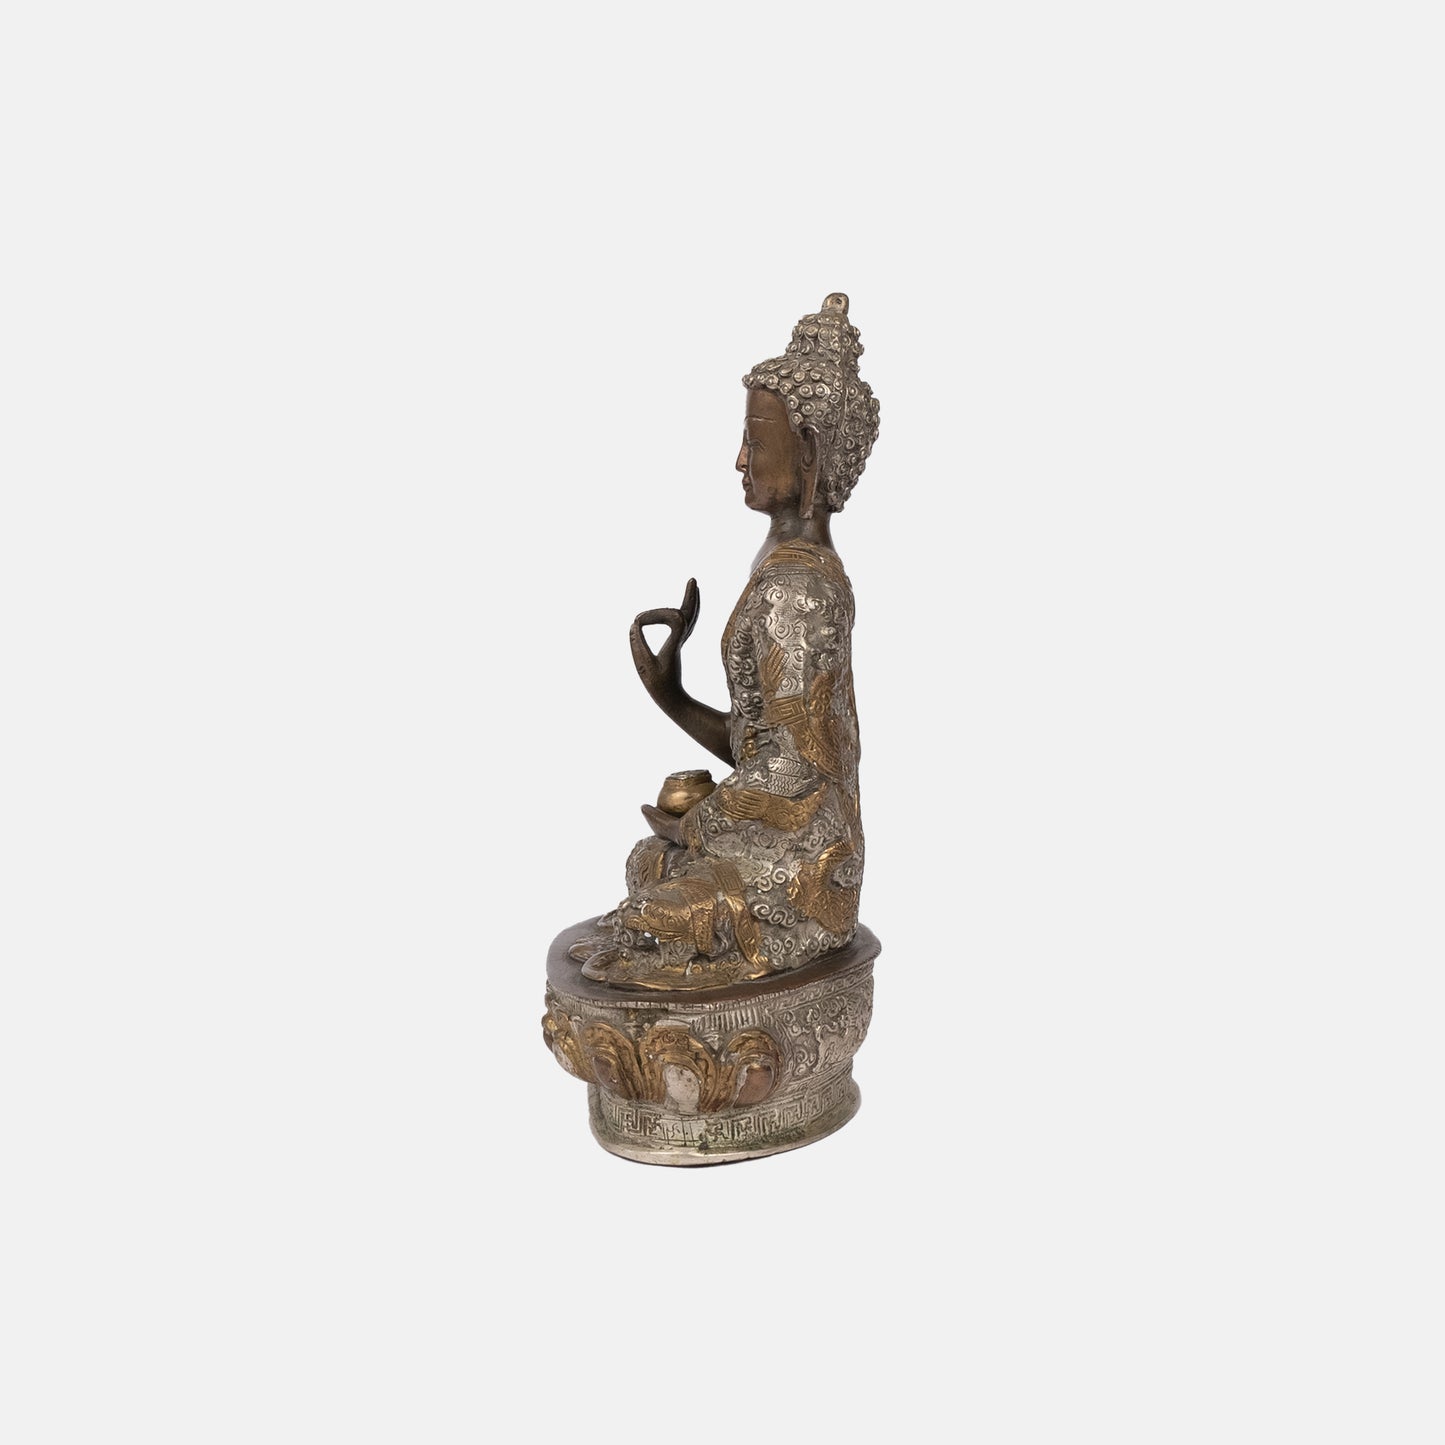 Brass seated Buddha